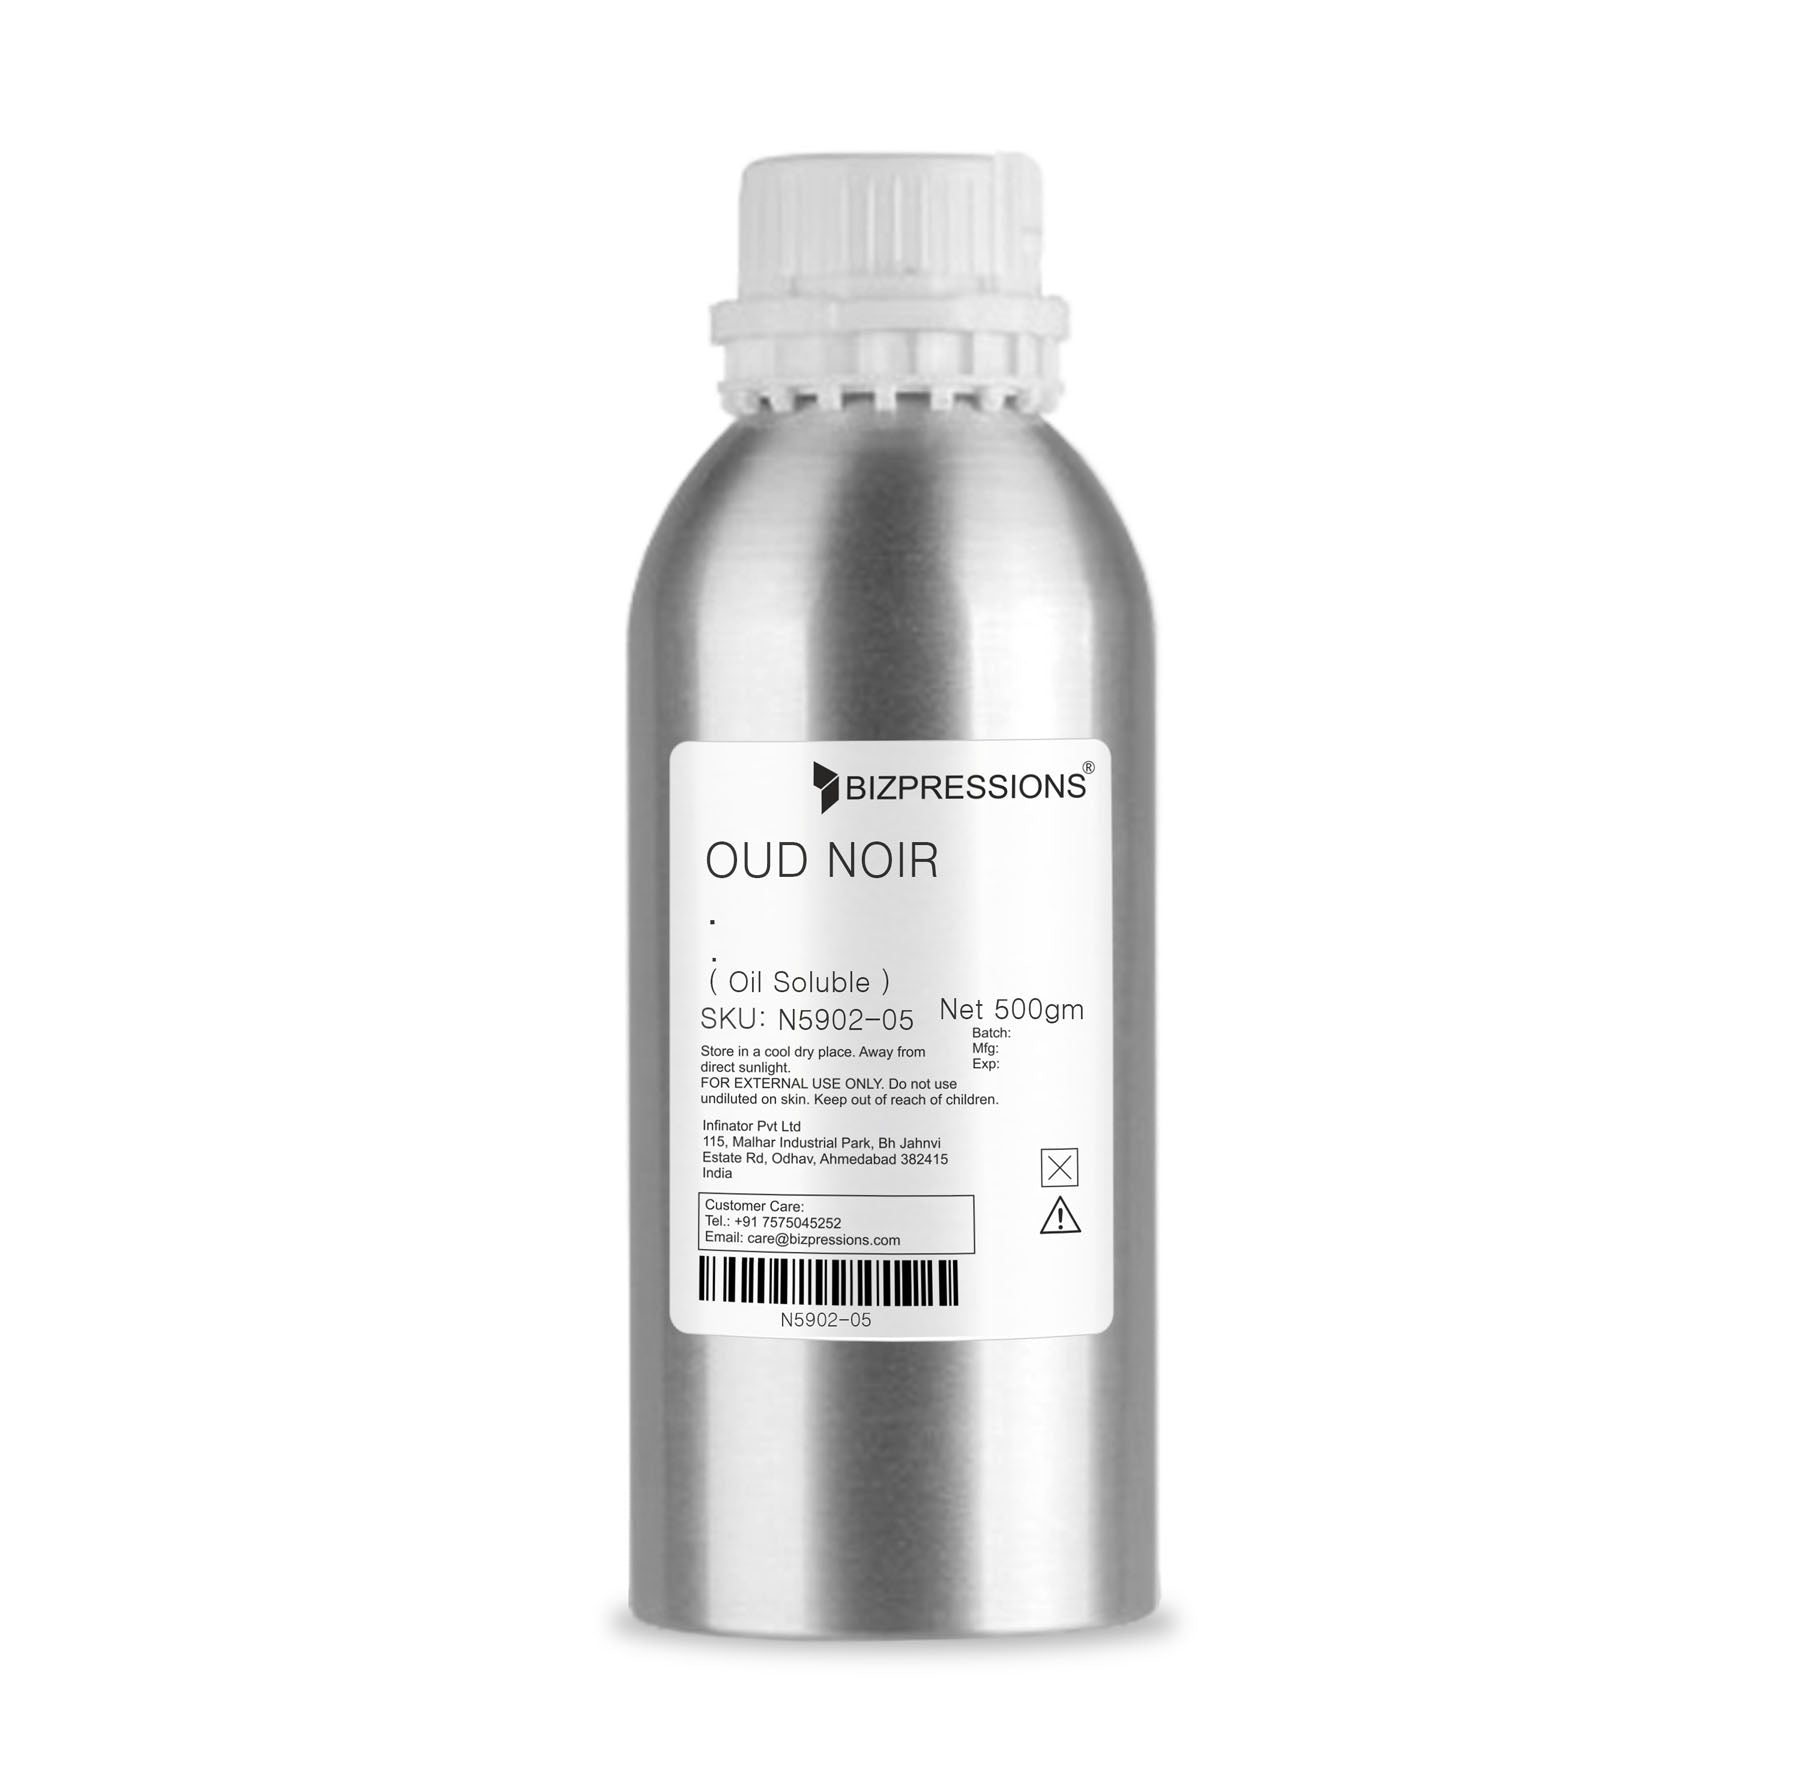 OUD NOIR - Fragrance ( Oil Soluble ) - 500 gm